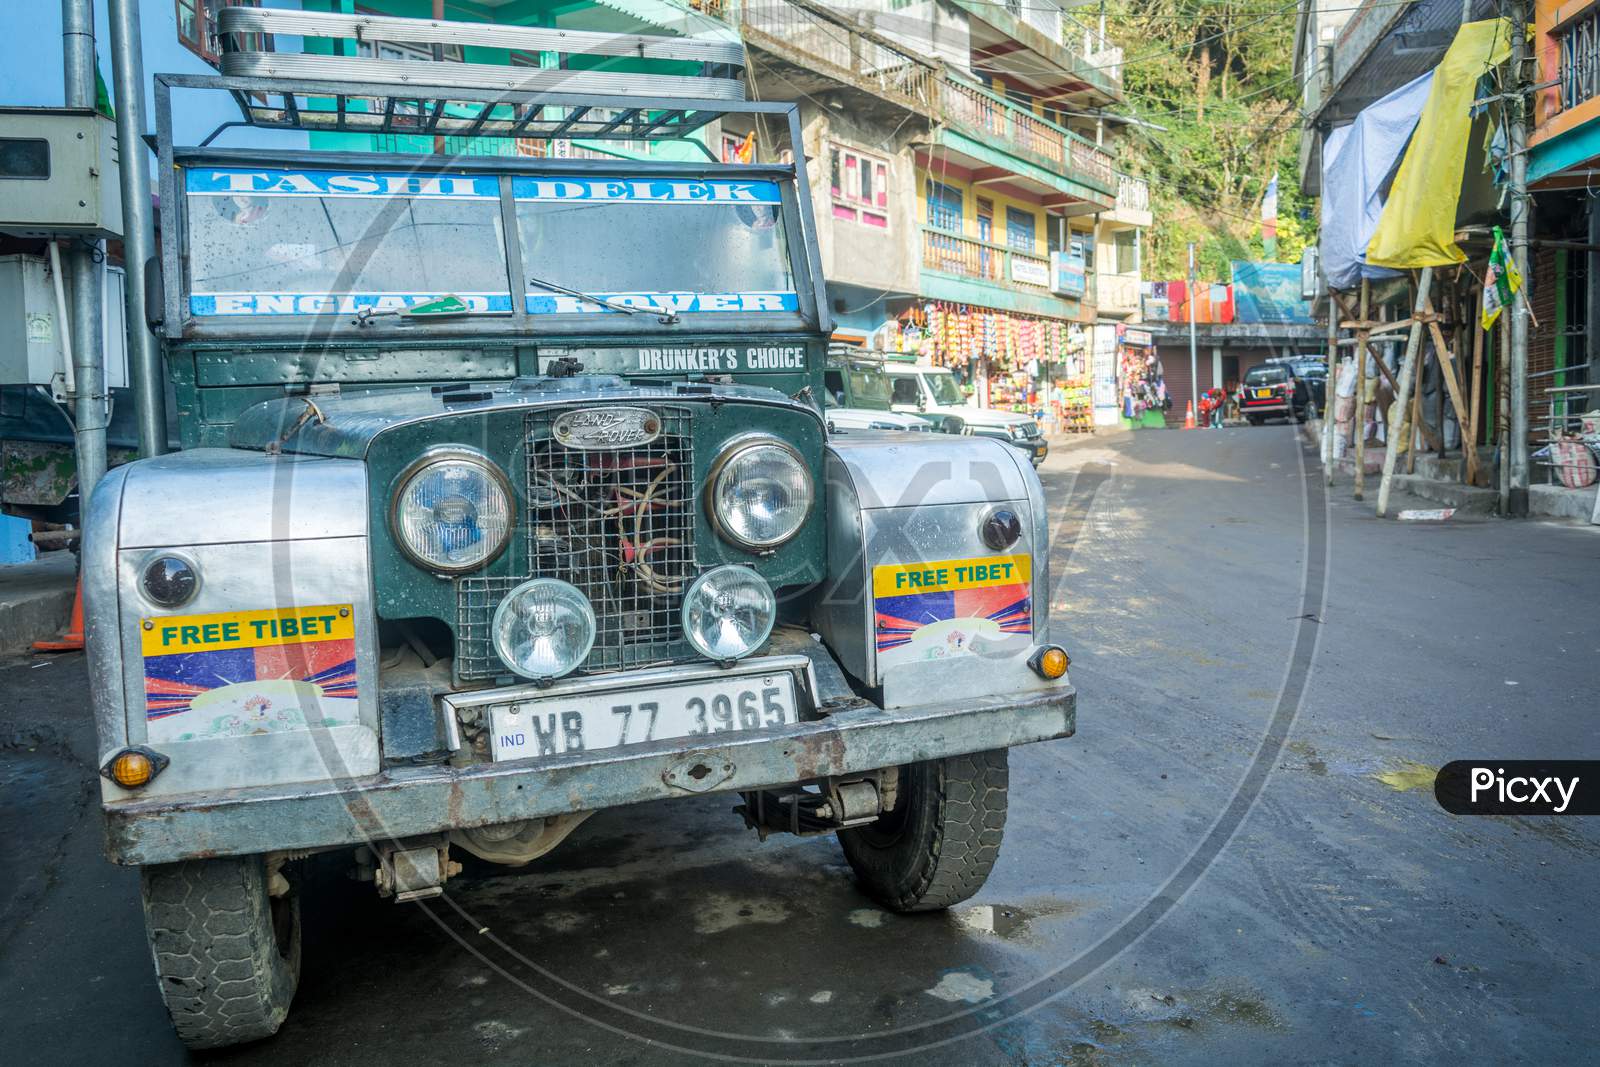 Land Rover Booking Center, Manebhanjan, Darjeeling, West Bengal, India